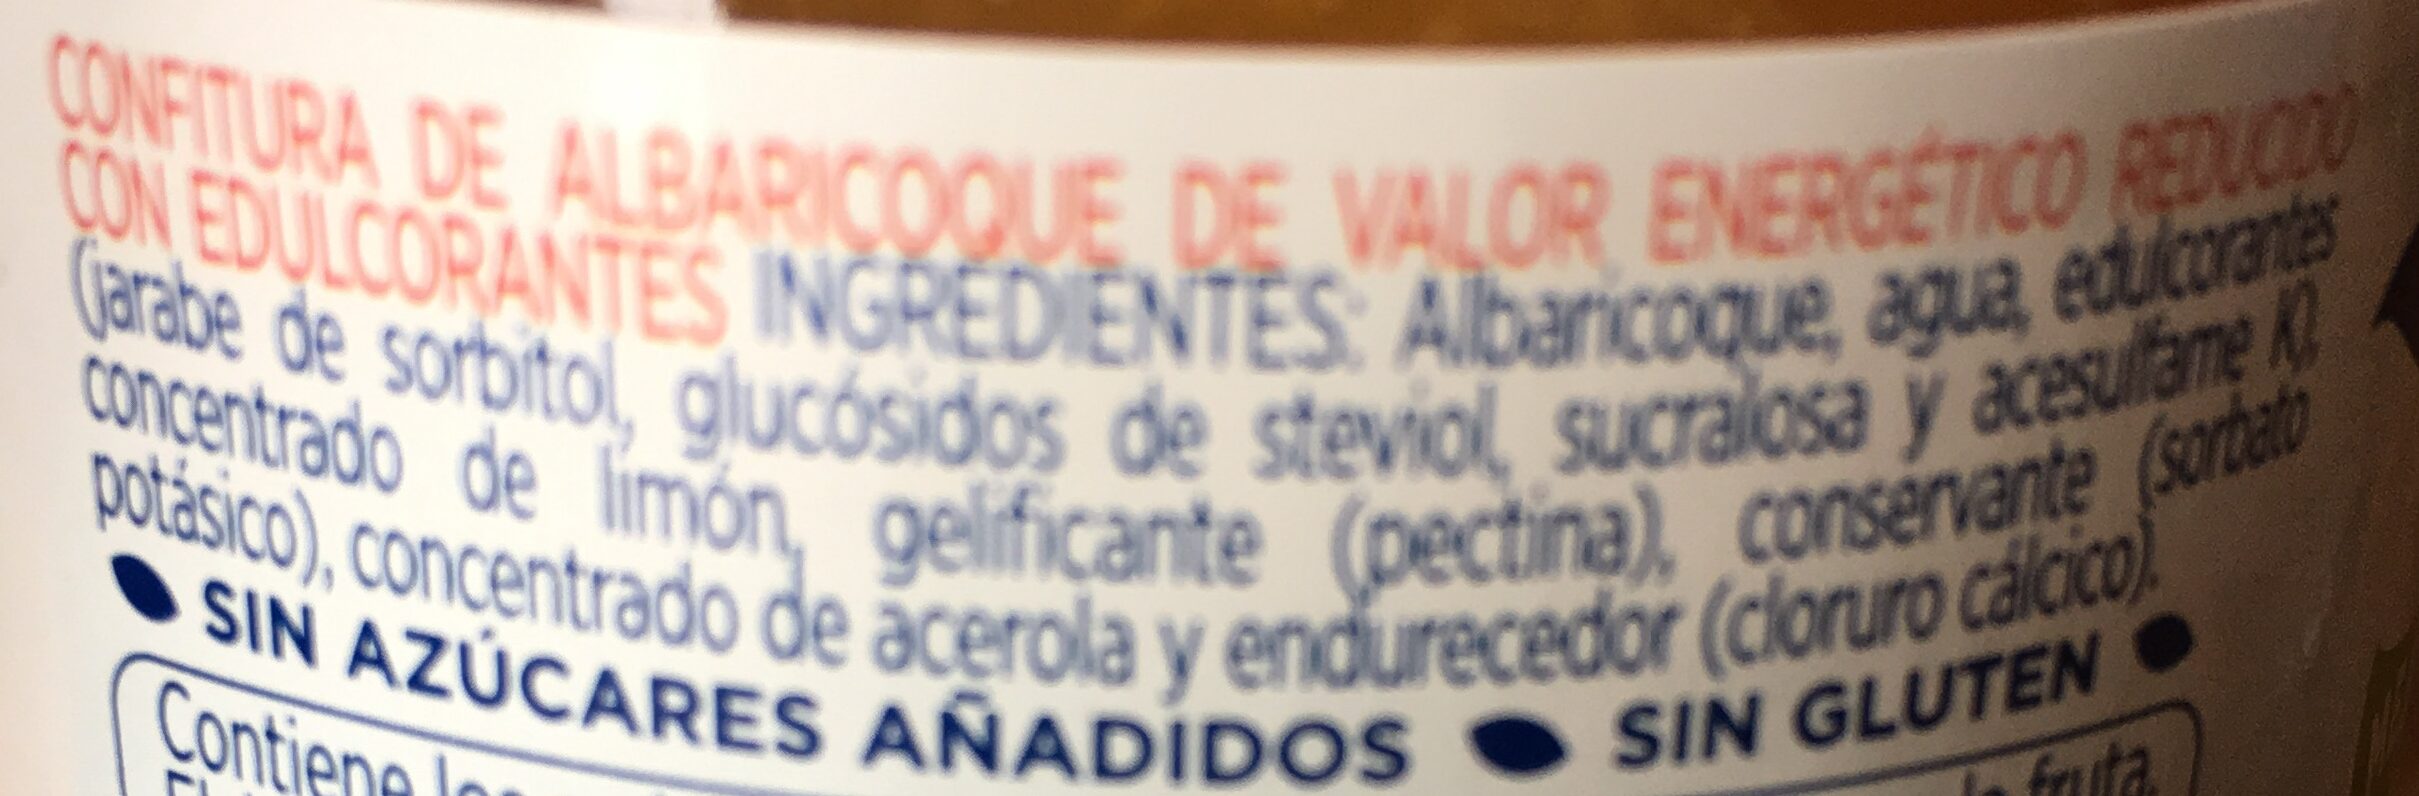 Mermelada de albaricoques diet - Ingrédients - es